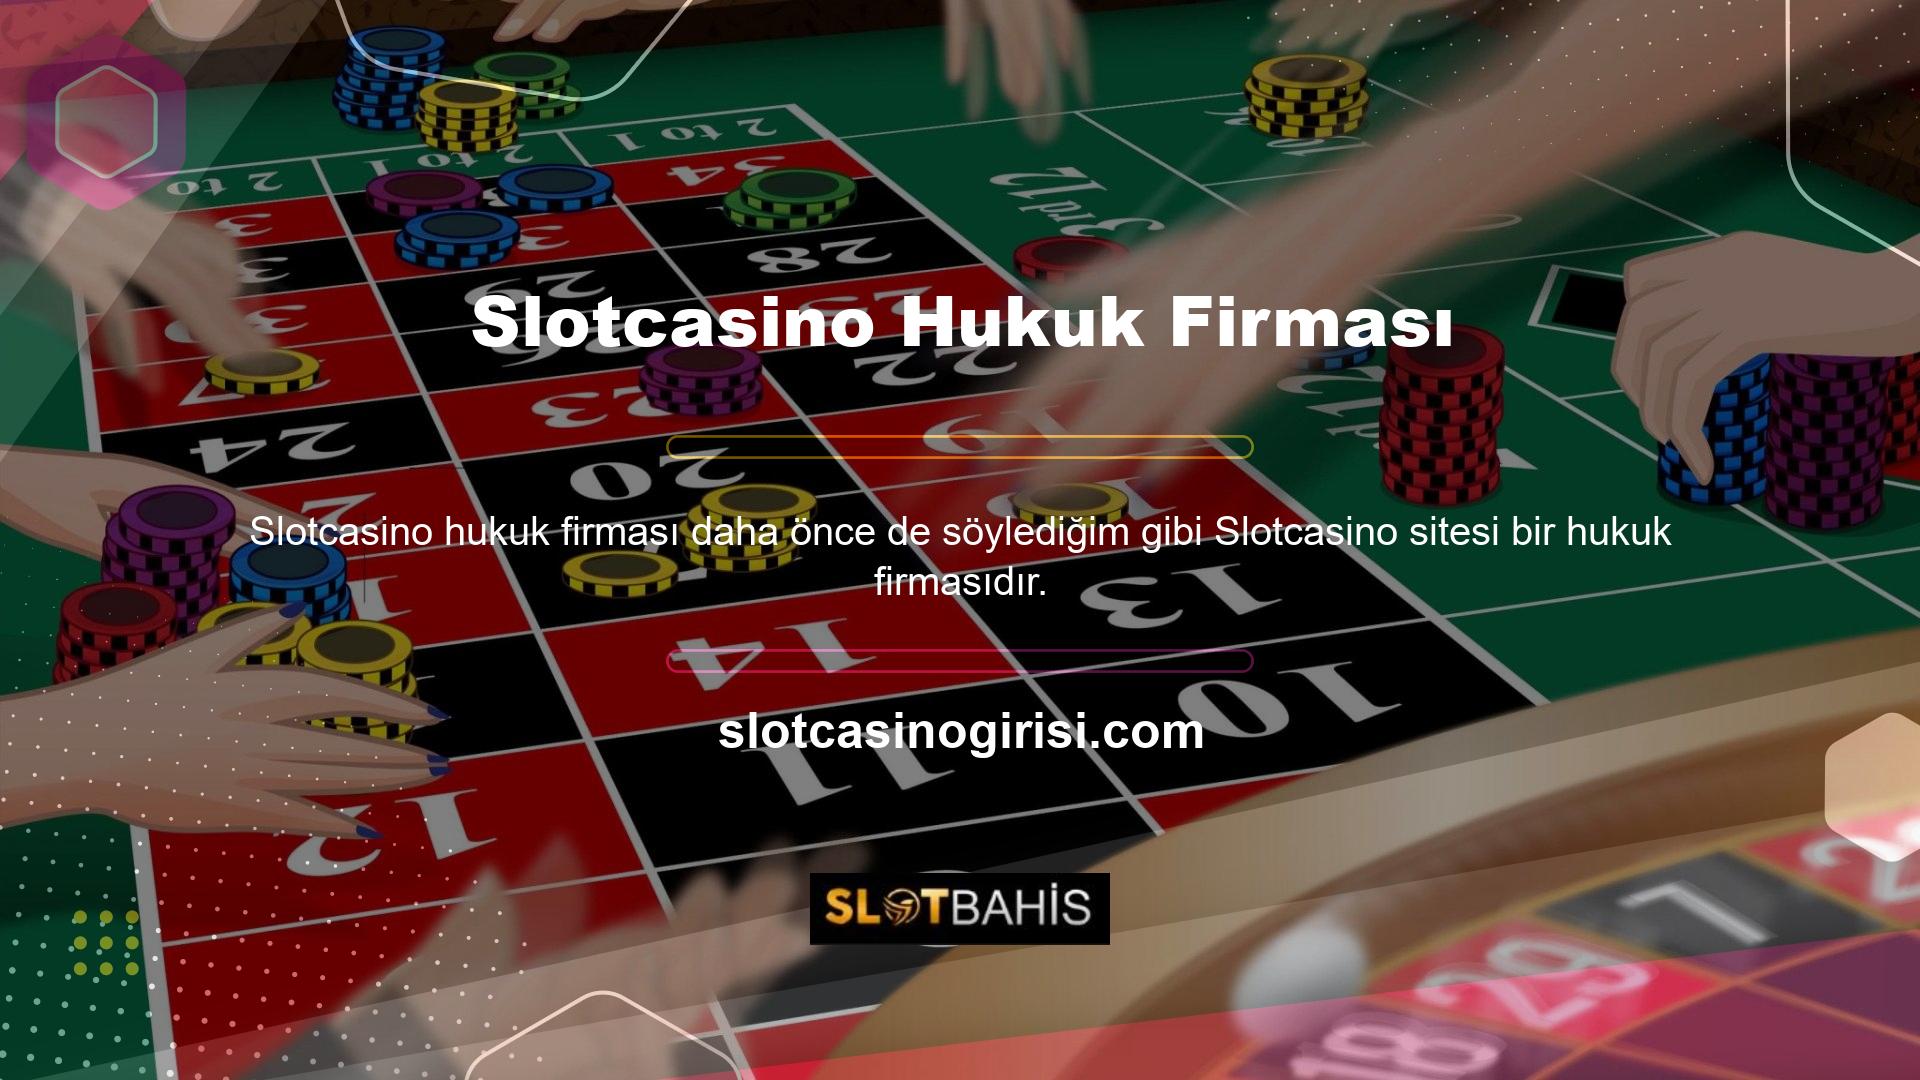 Çevrimiçi casino tutkunlarının vazgeçilmezi olan Slotcasino, oyuncuların aksiyonu izlerken gerçek zamanlı olarak bahis yapmalarına ve para yatırmalarına olanak tanır